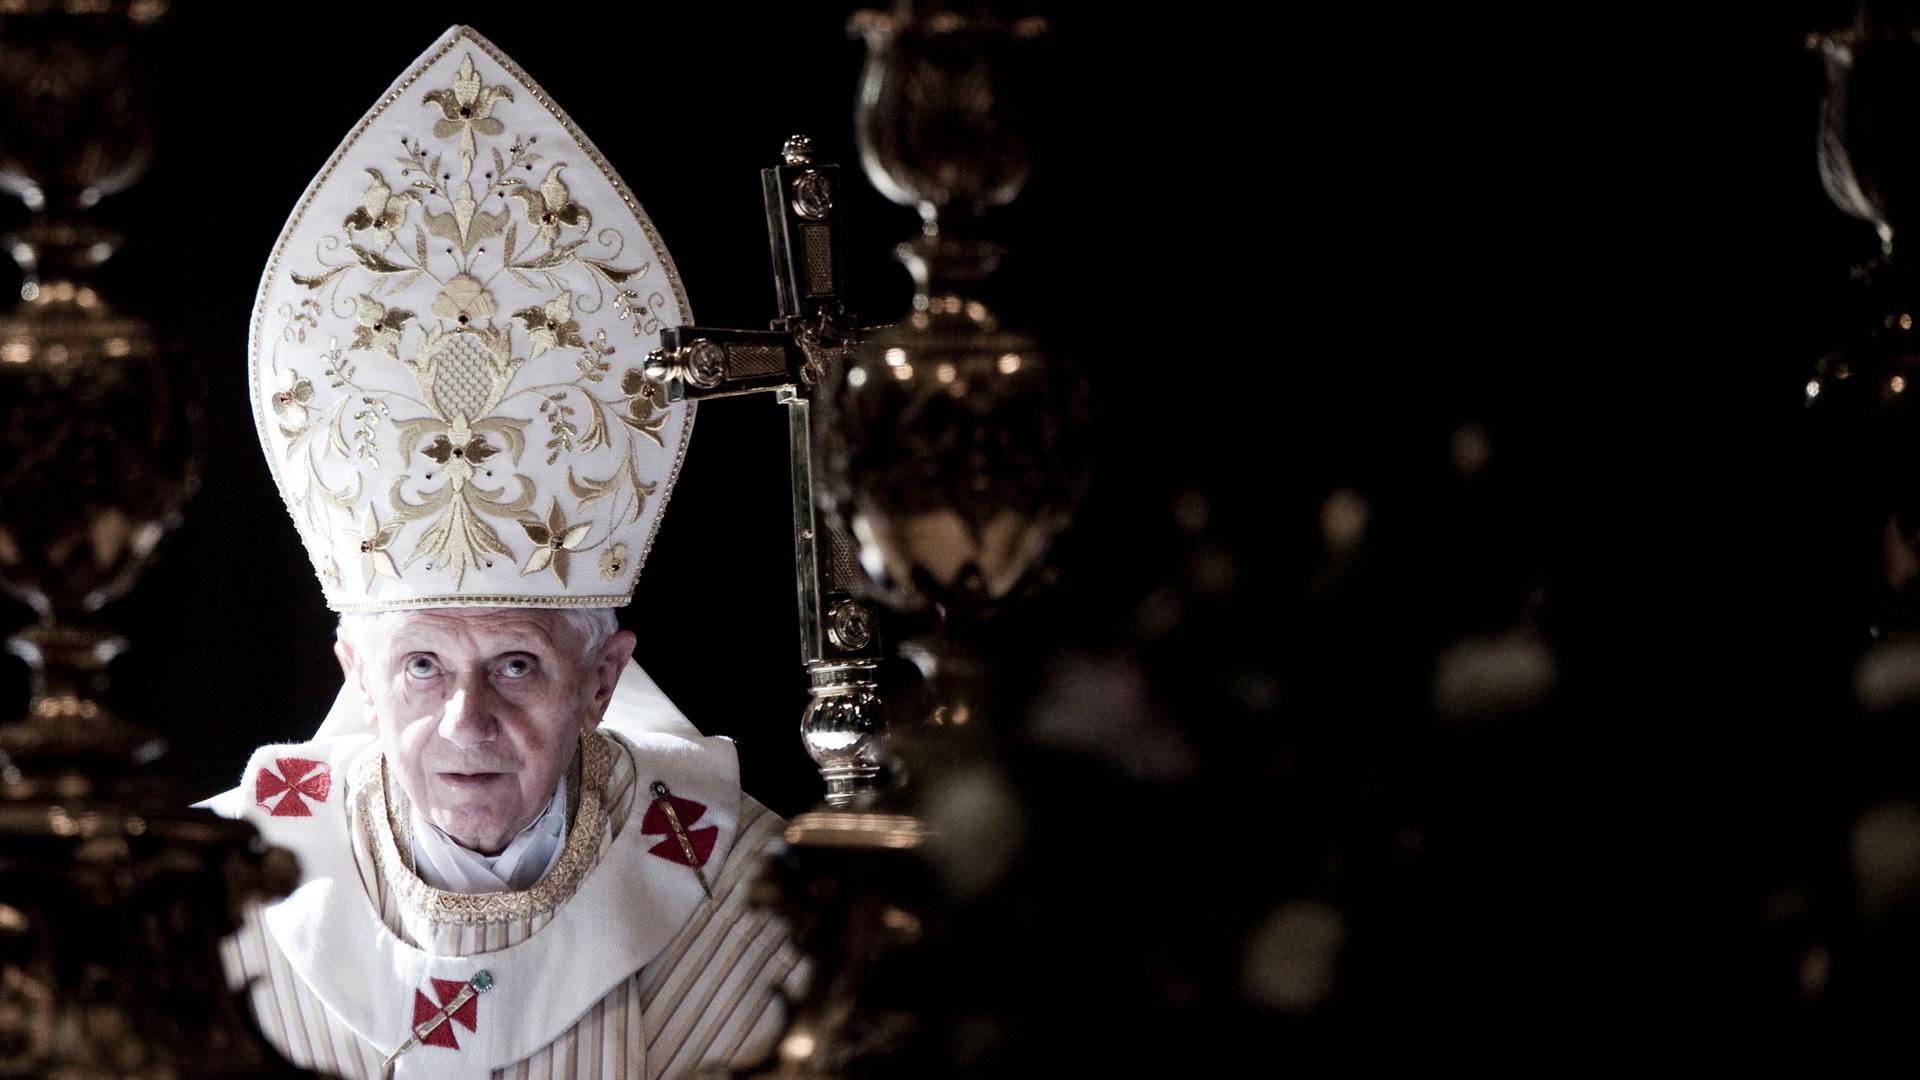 Papst Benedikt trägt eine weiße, oben spitz zulaufende Kopfbedeckung mit goldenen Ornamenten und schaut nach oben.